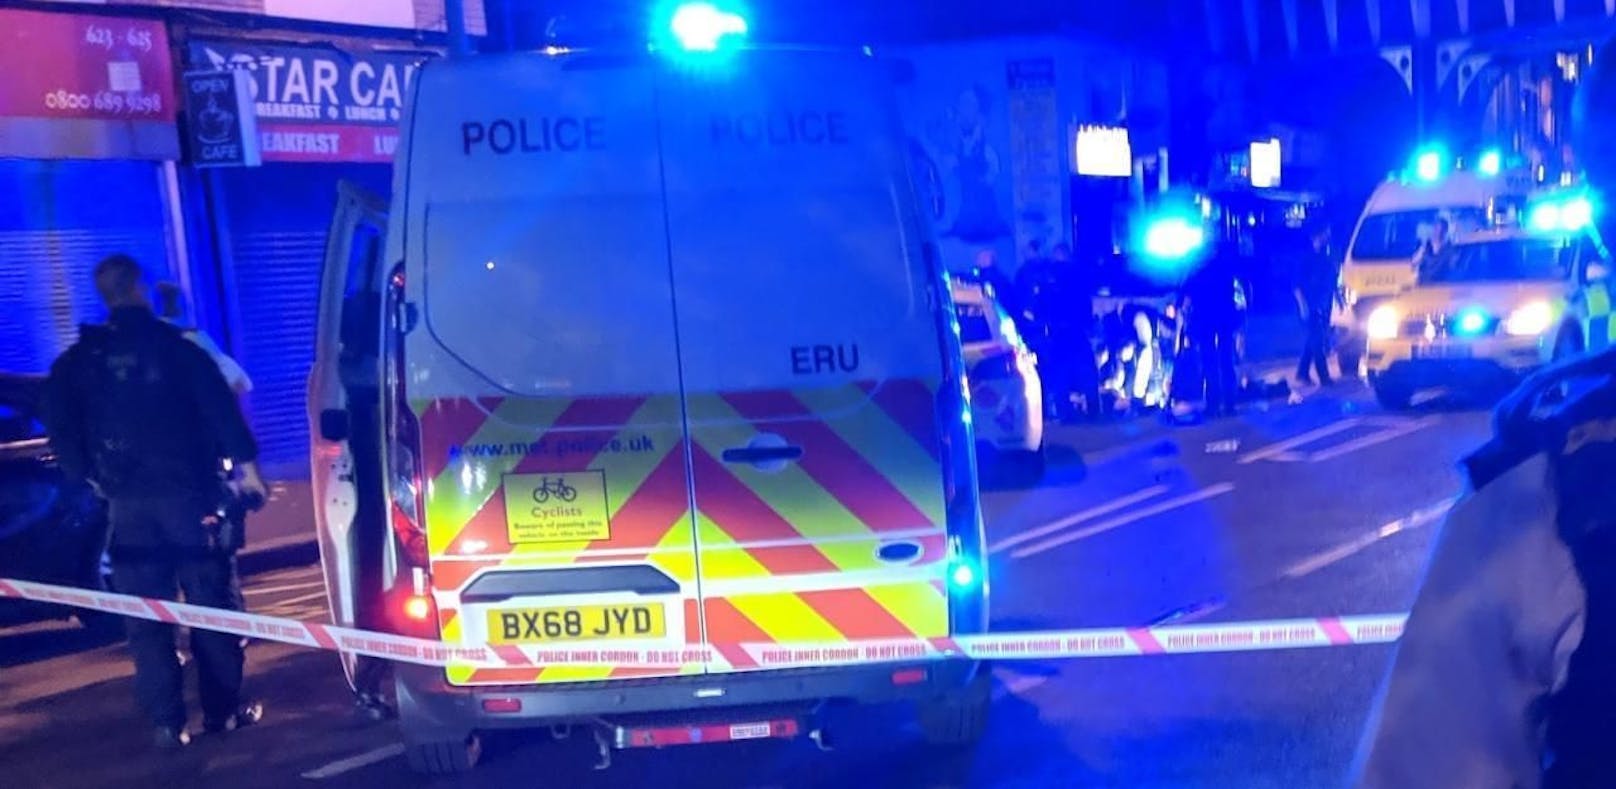 In der Nacht auf Donnerstag wurde in London ein Polizist mit einer Machete attackiert und lebensgefährlich verletzt